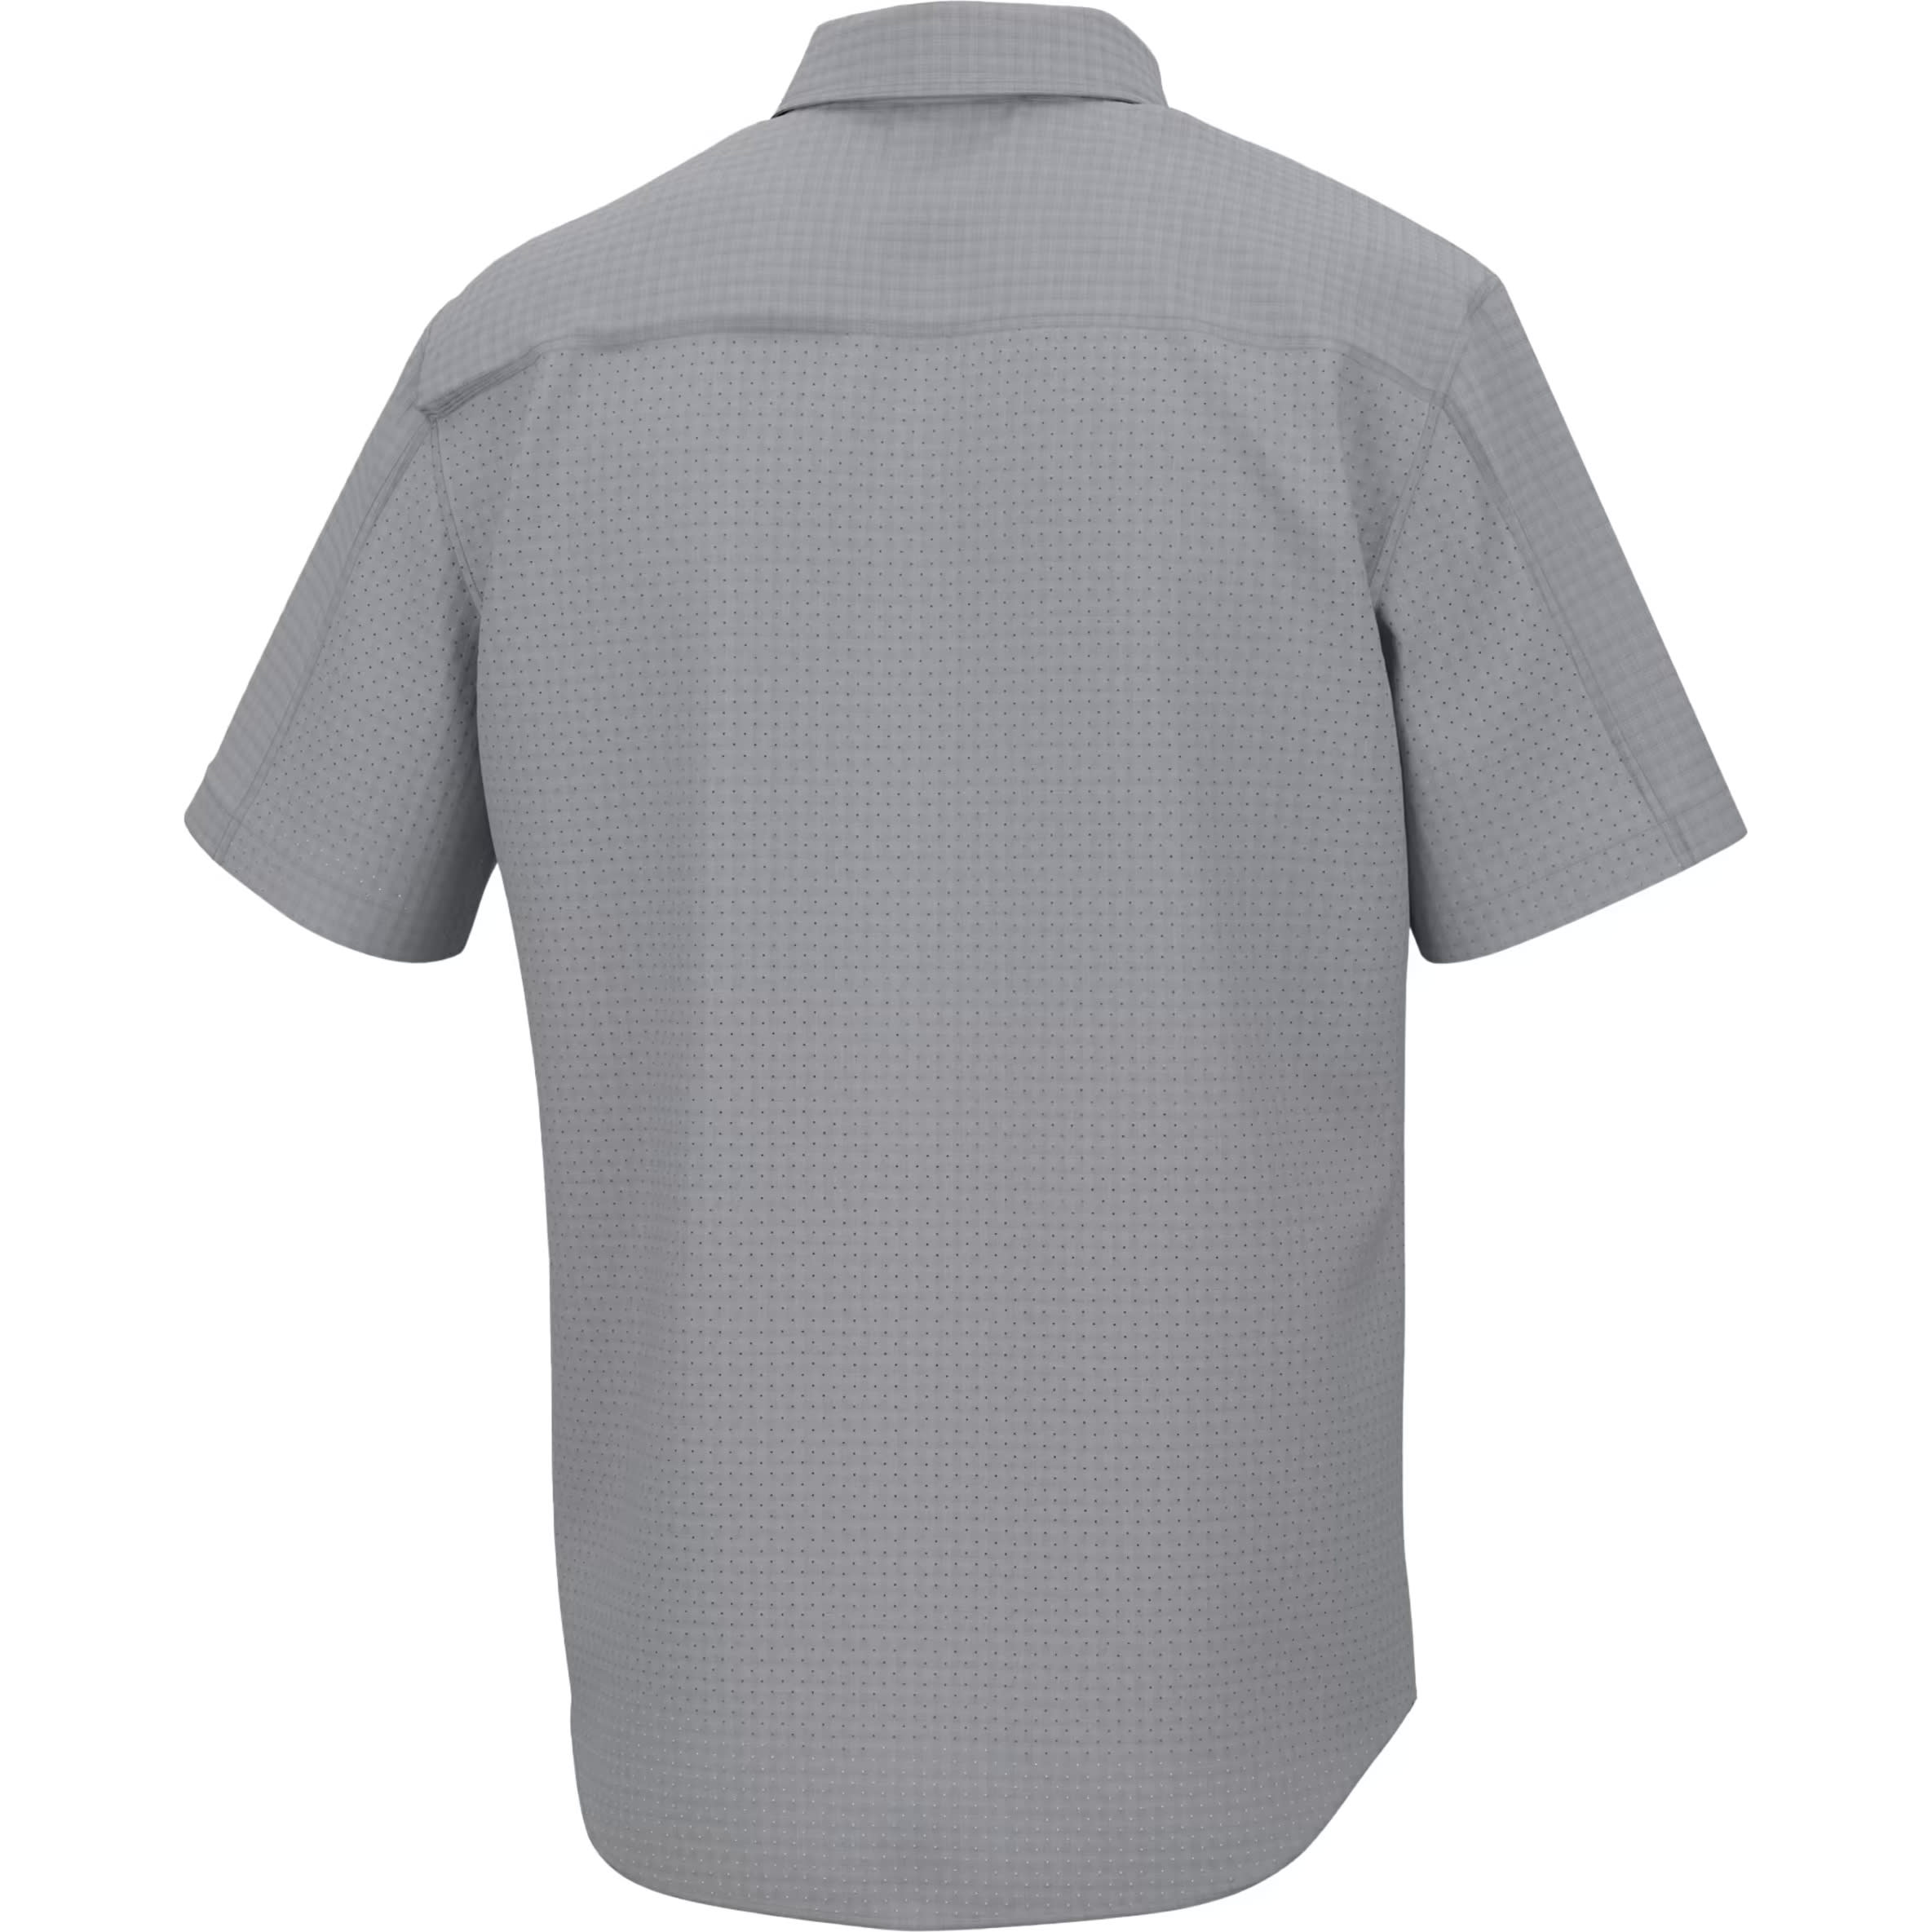 Huk Men’s Tide Point Break Minicheck Short-Sleeve Button-Down Shirt